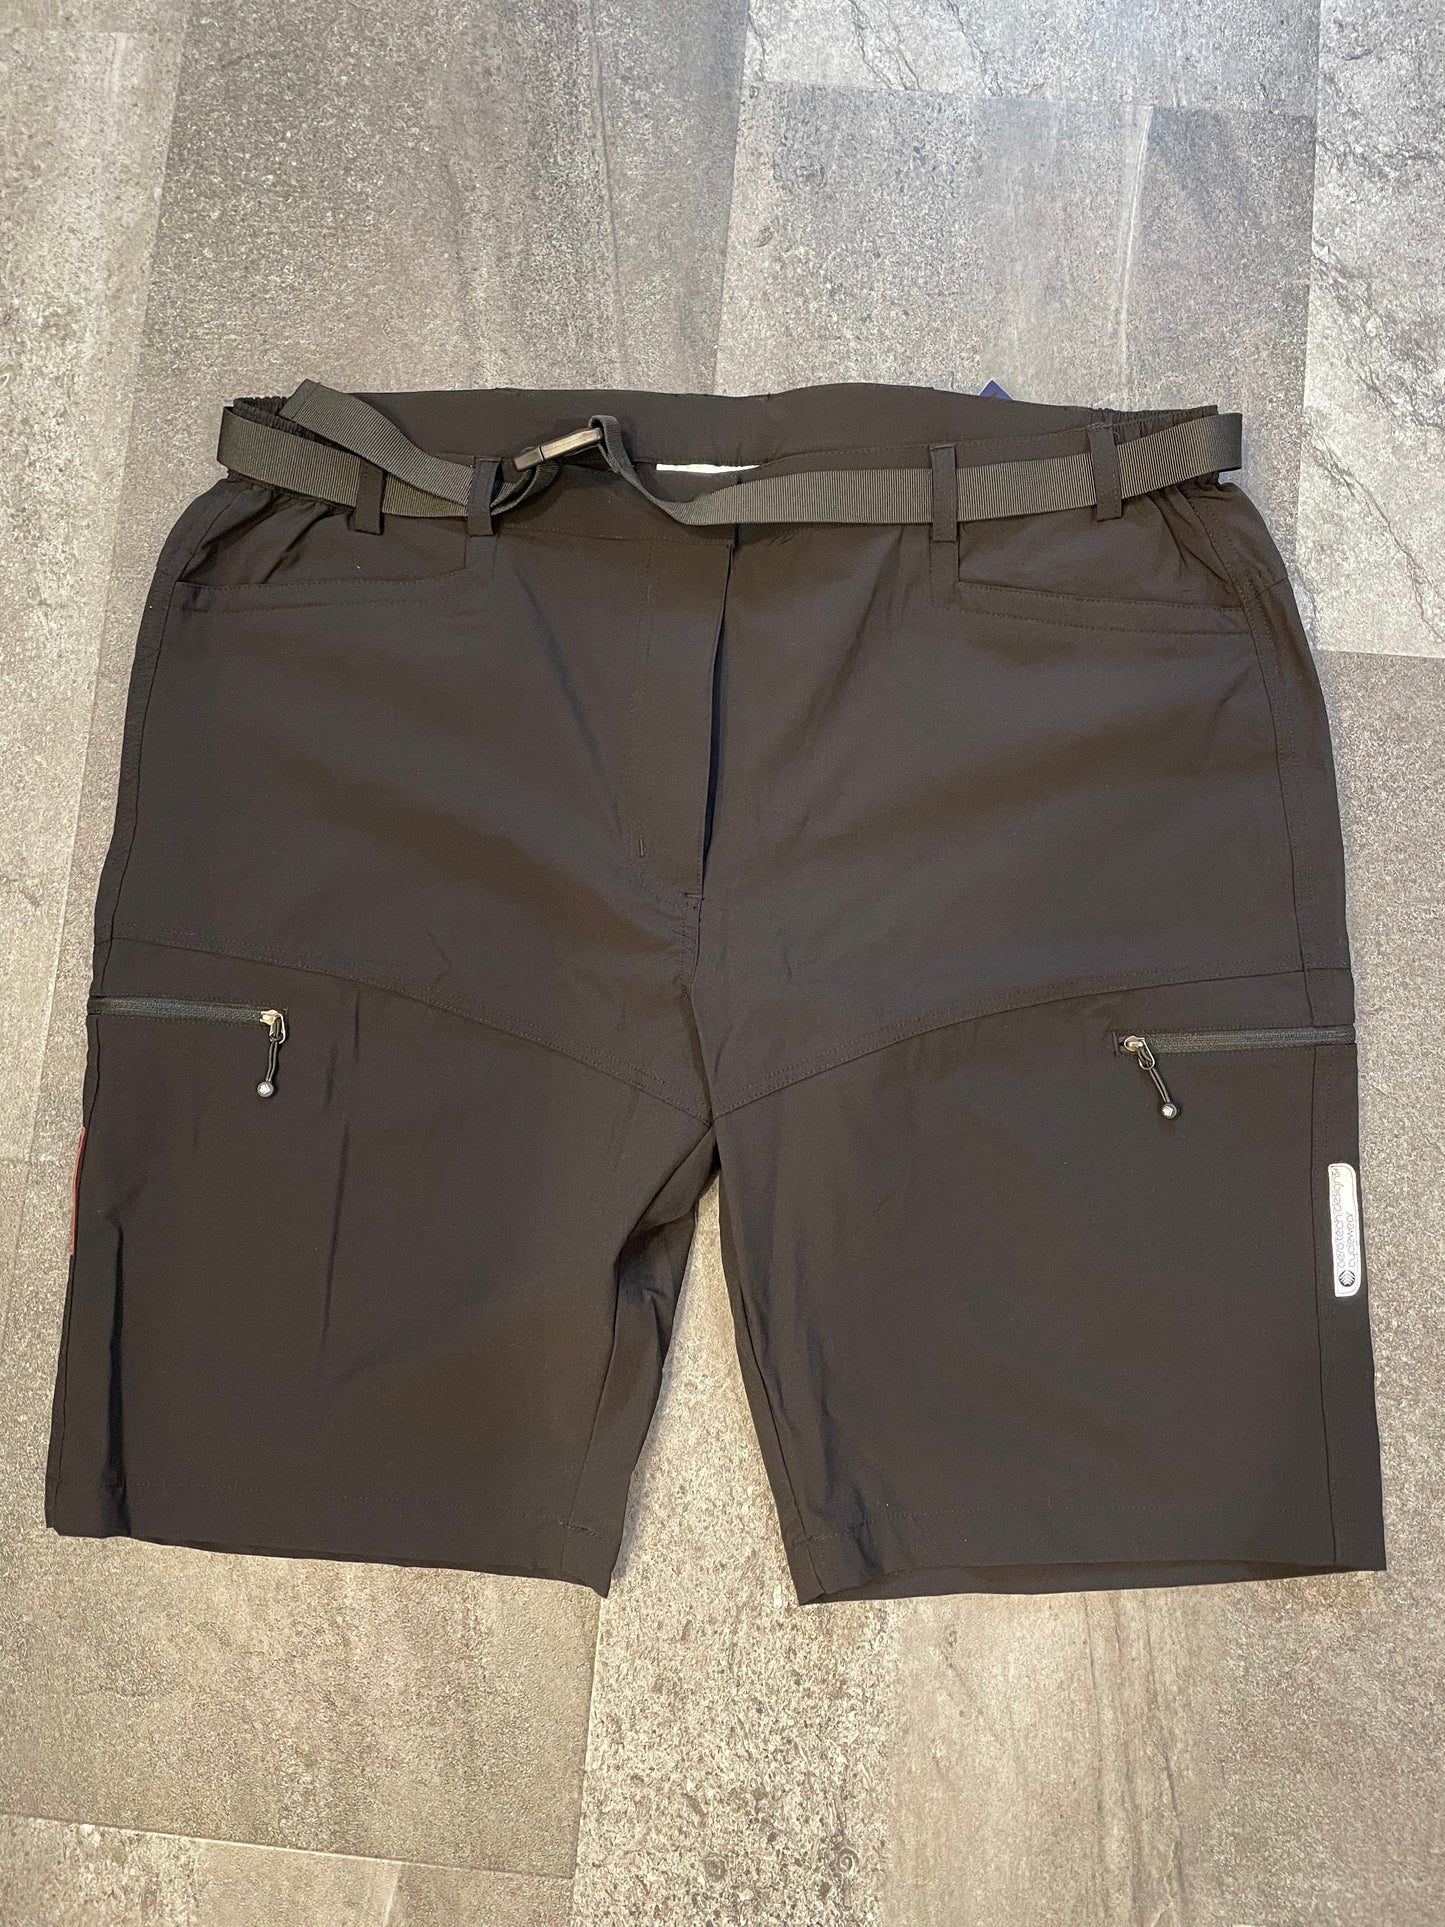 Aero Tech Black Urban Cargo Shorts (2XL)